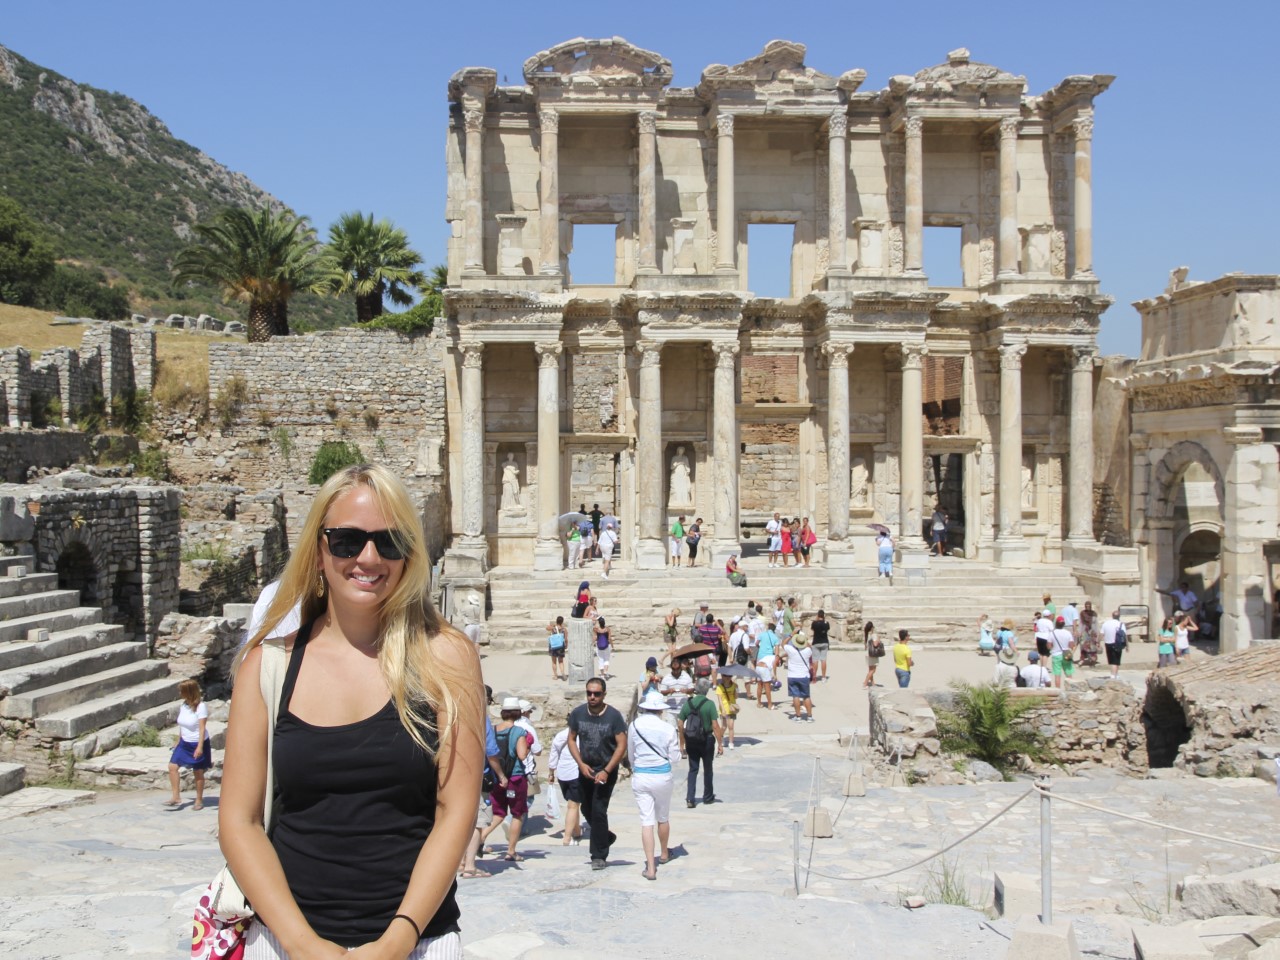 Turkey Tours - Ephesus Library